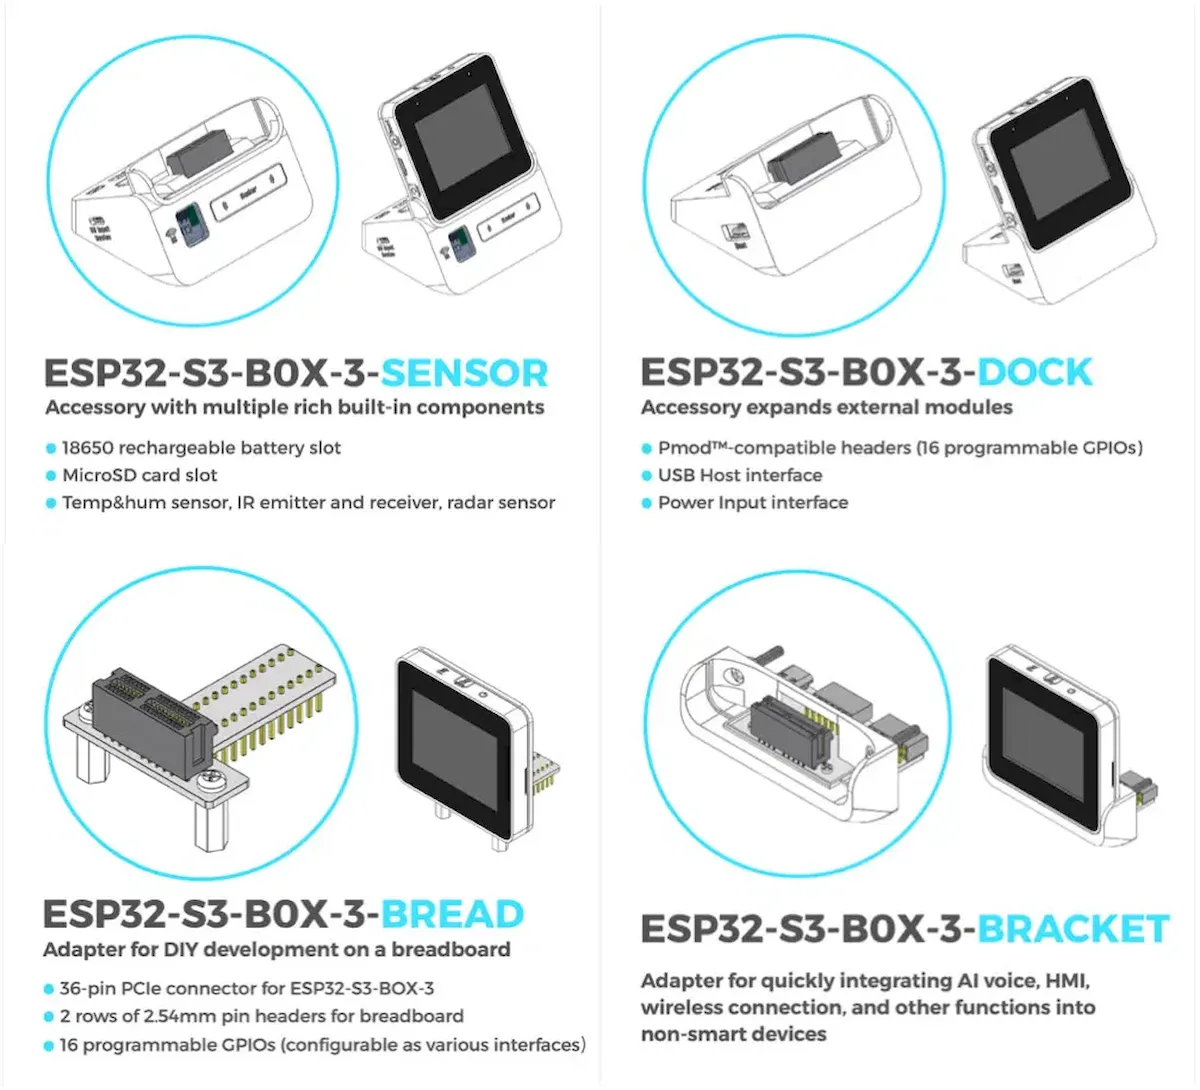 Kit de desenvolvimento ESP32-S3-BOX-3 foi atualizado